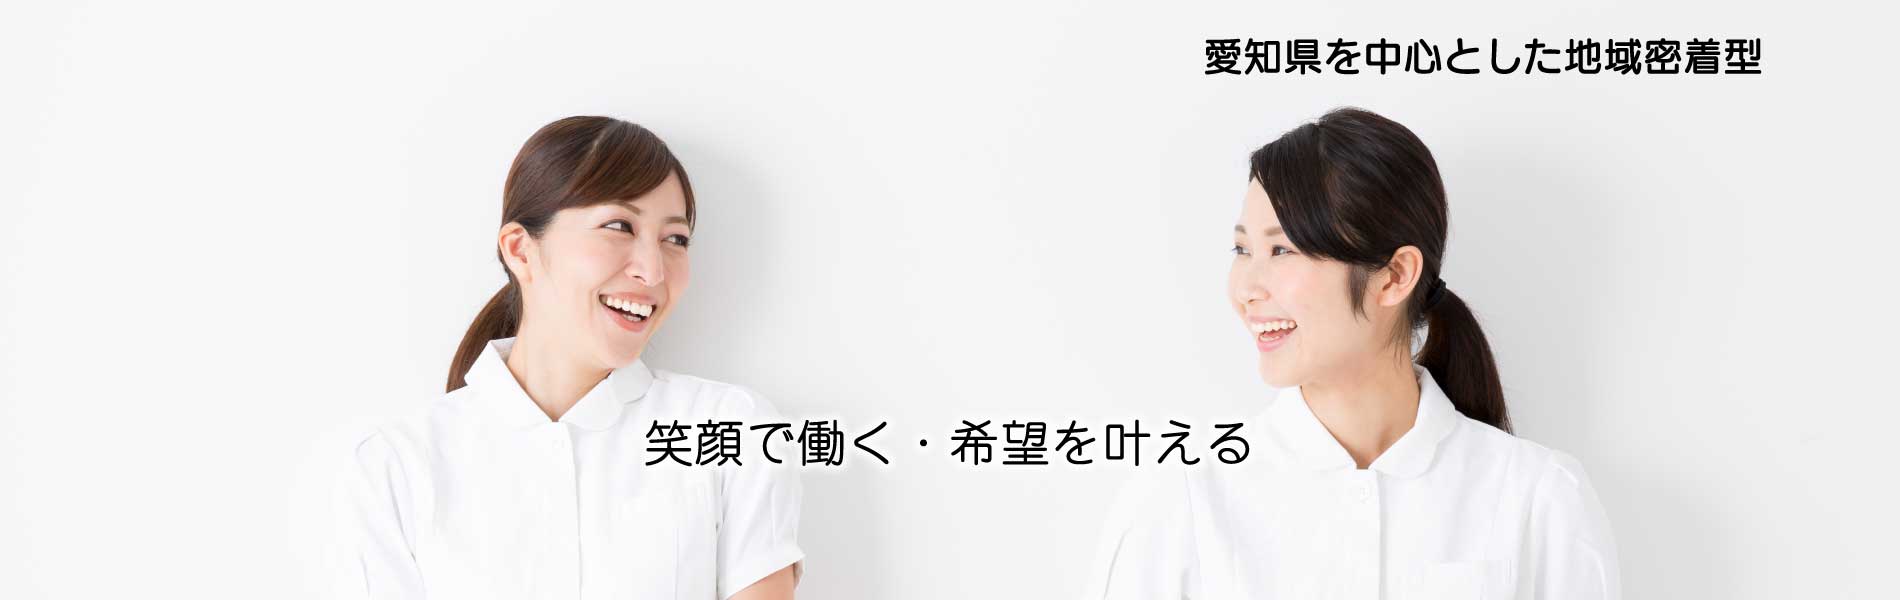 愛知県の看護師職を探すならタチ基福祉サービス